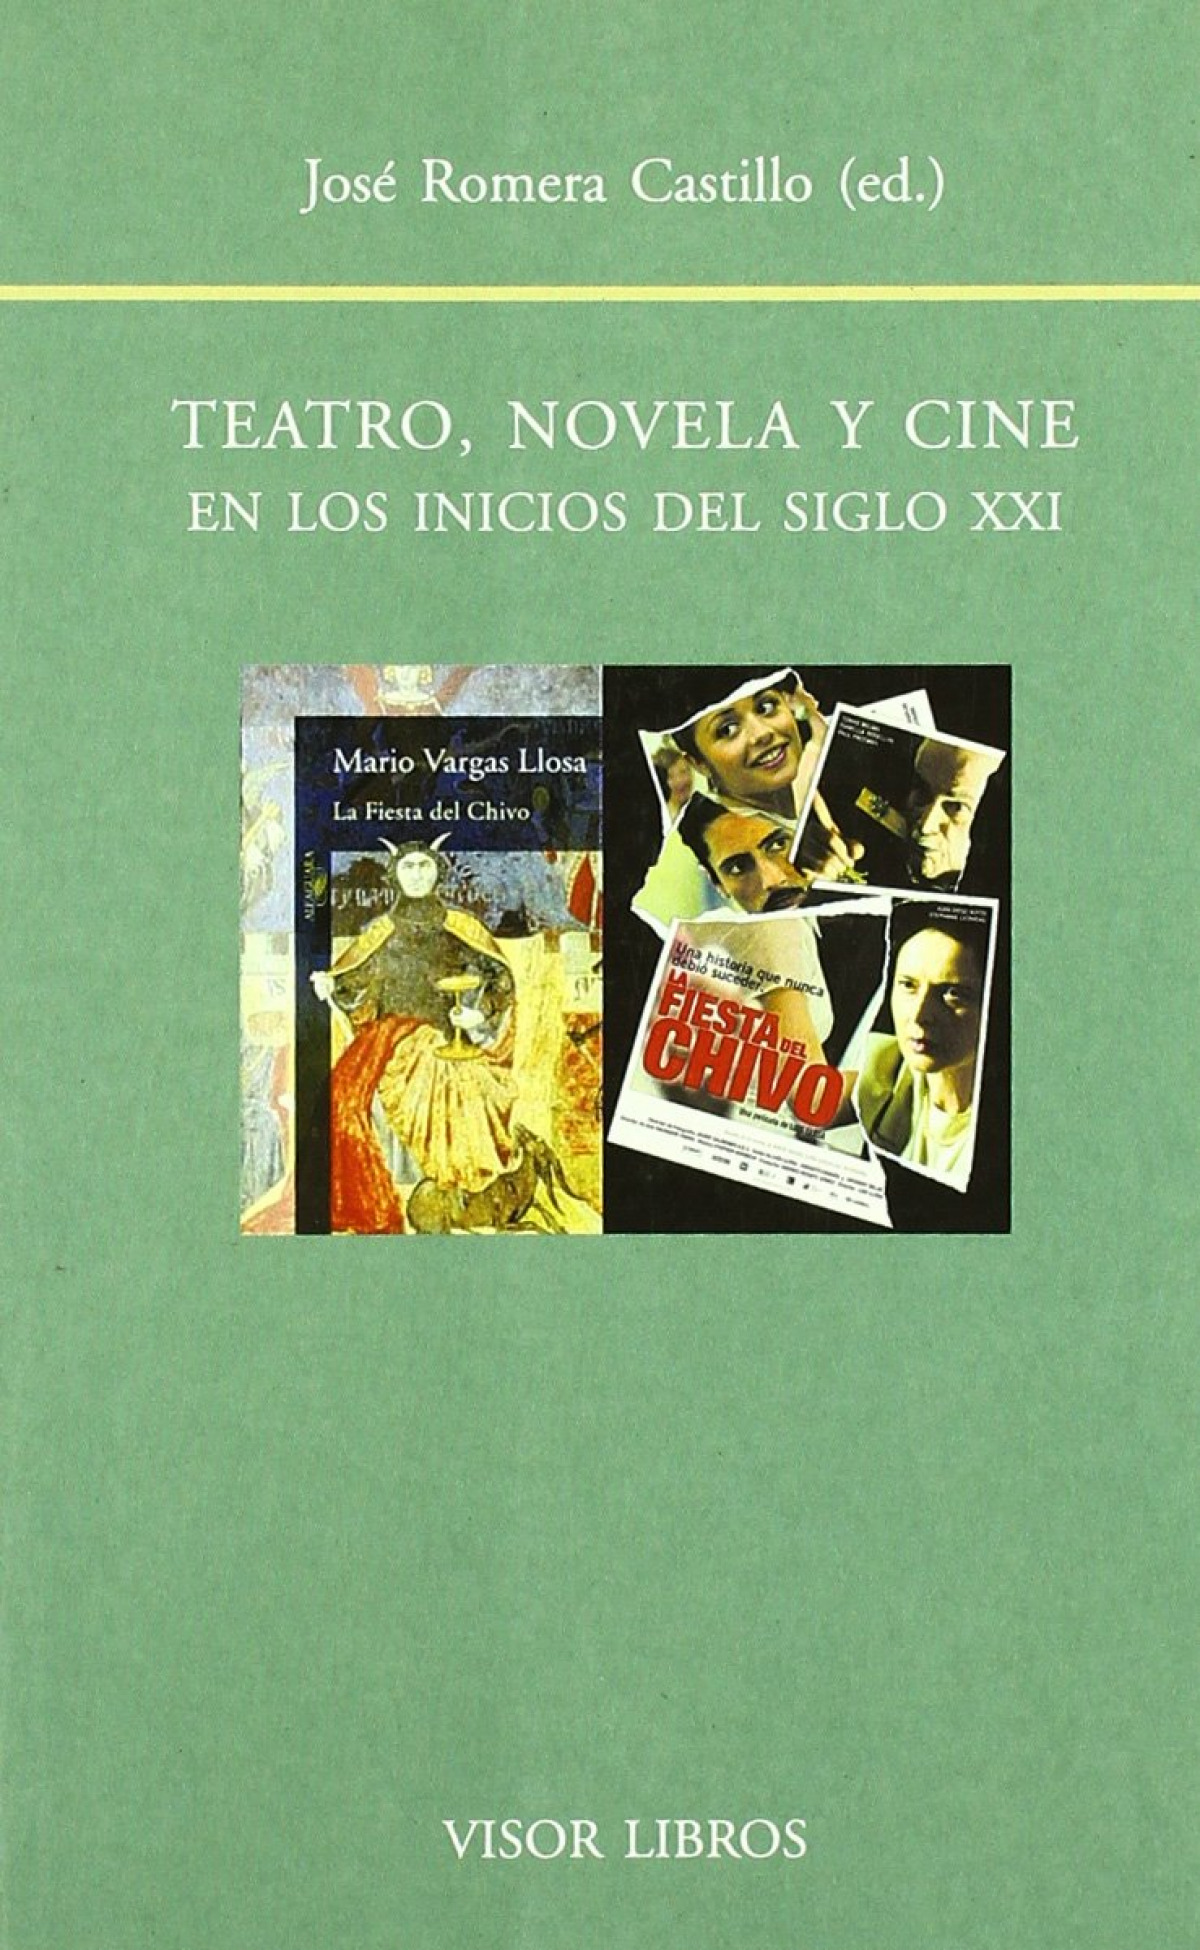 Teatro novela y cine bf-102 en los inicios del siglo xxi - Romera Castillo, Jose